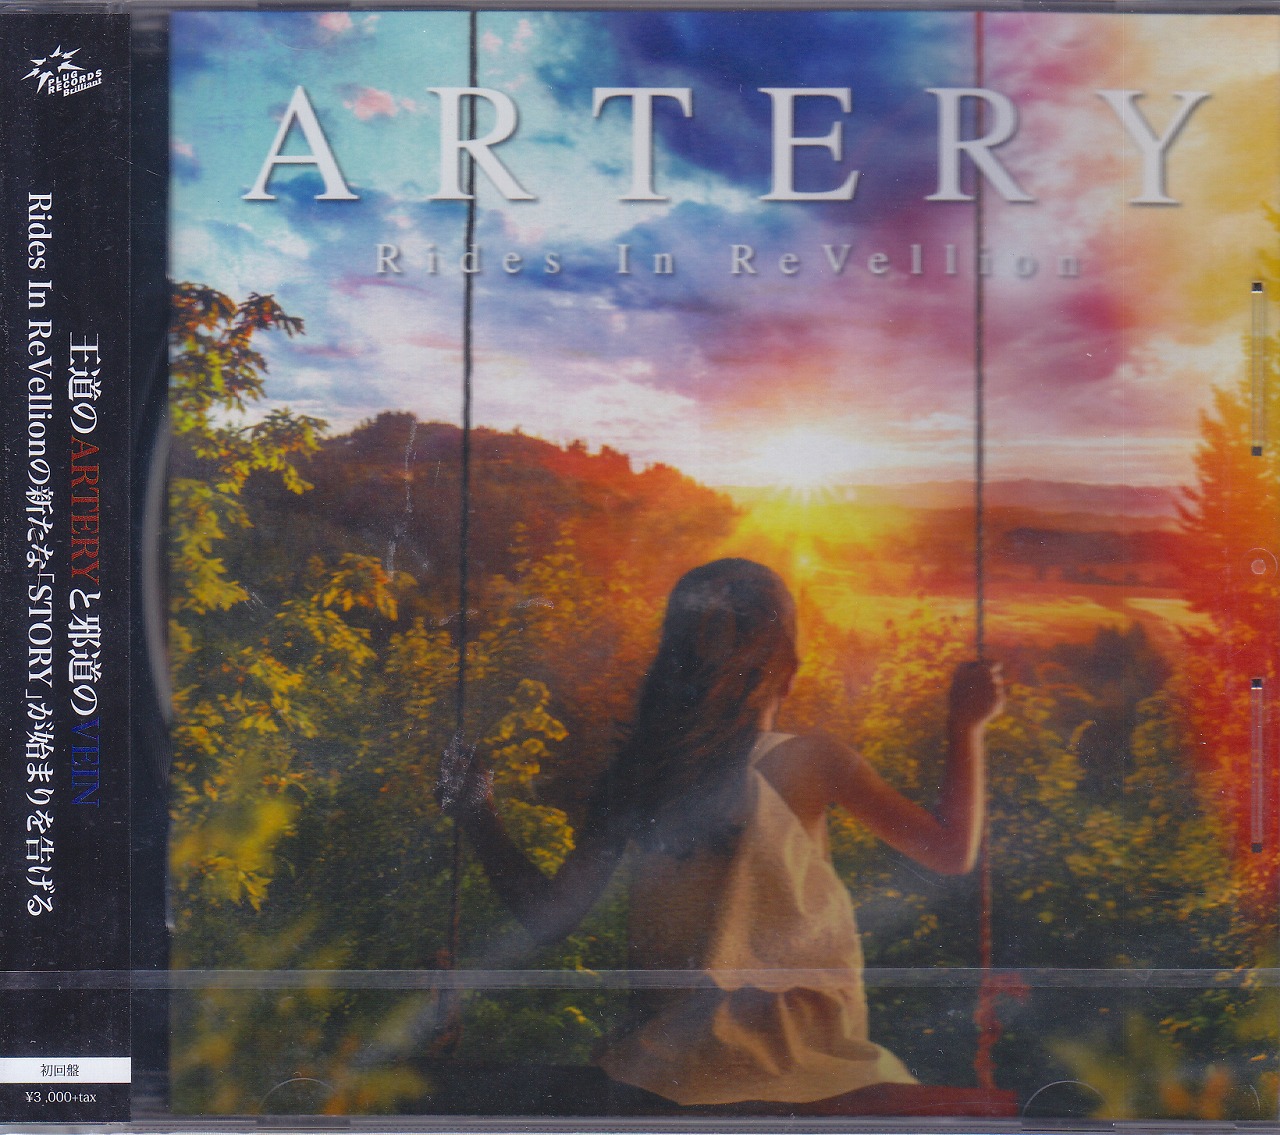 ライズインリベリオン の CD 【初回盤】ARTERY